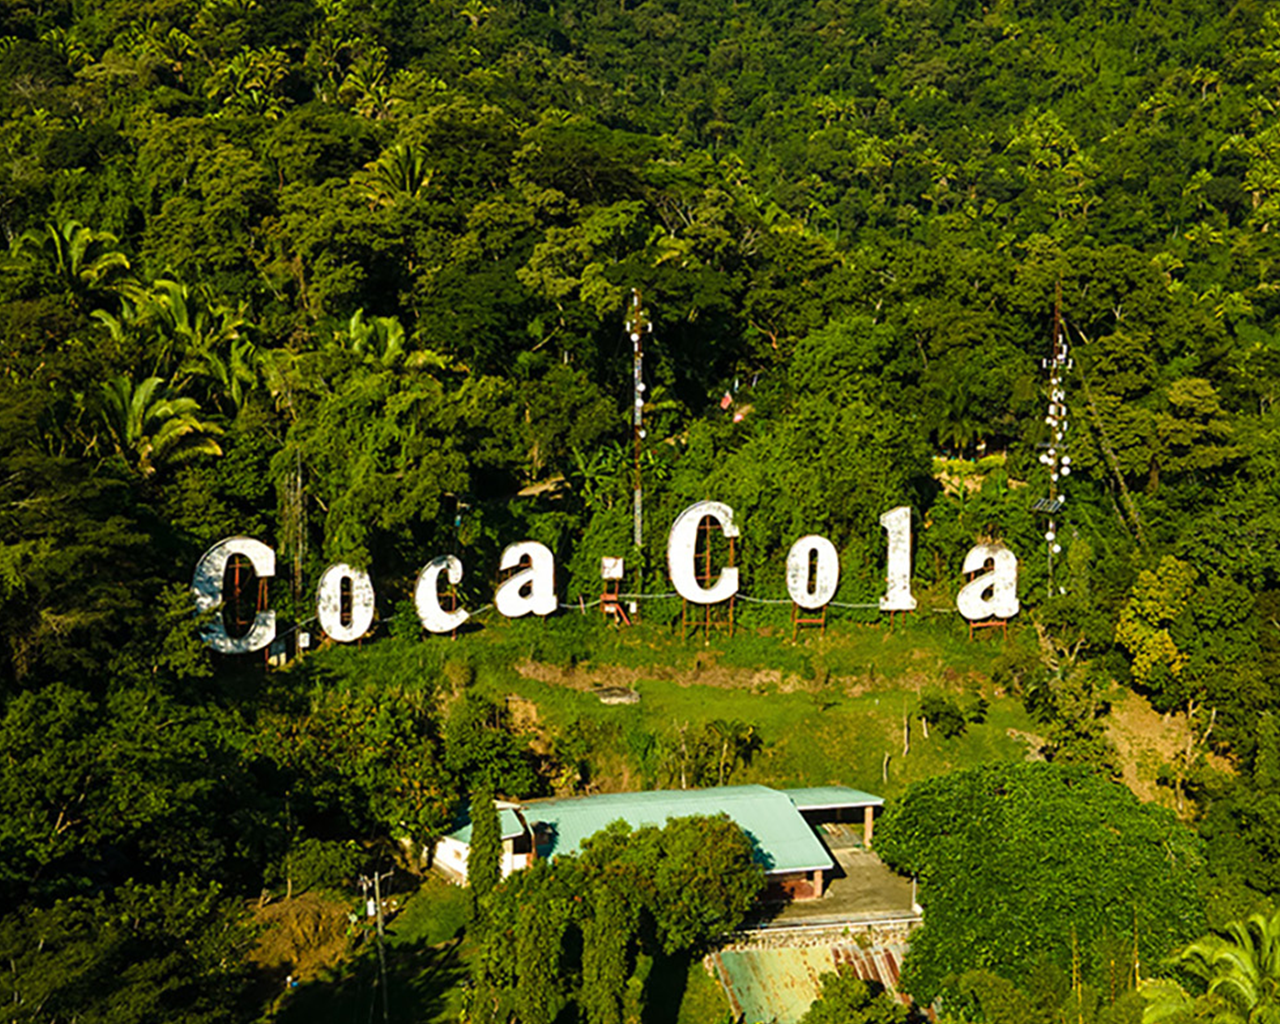 Vista aérea de un gran cartel de Coca-Cola en el medio de un frondoso bosque.